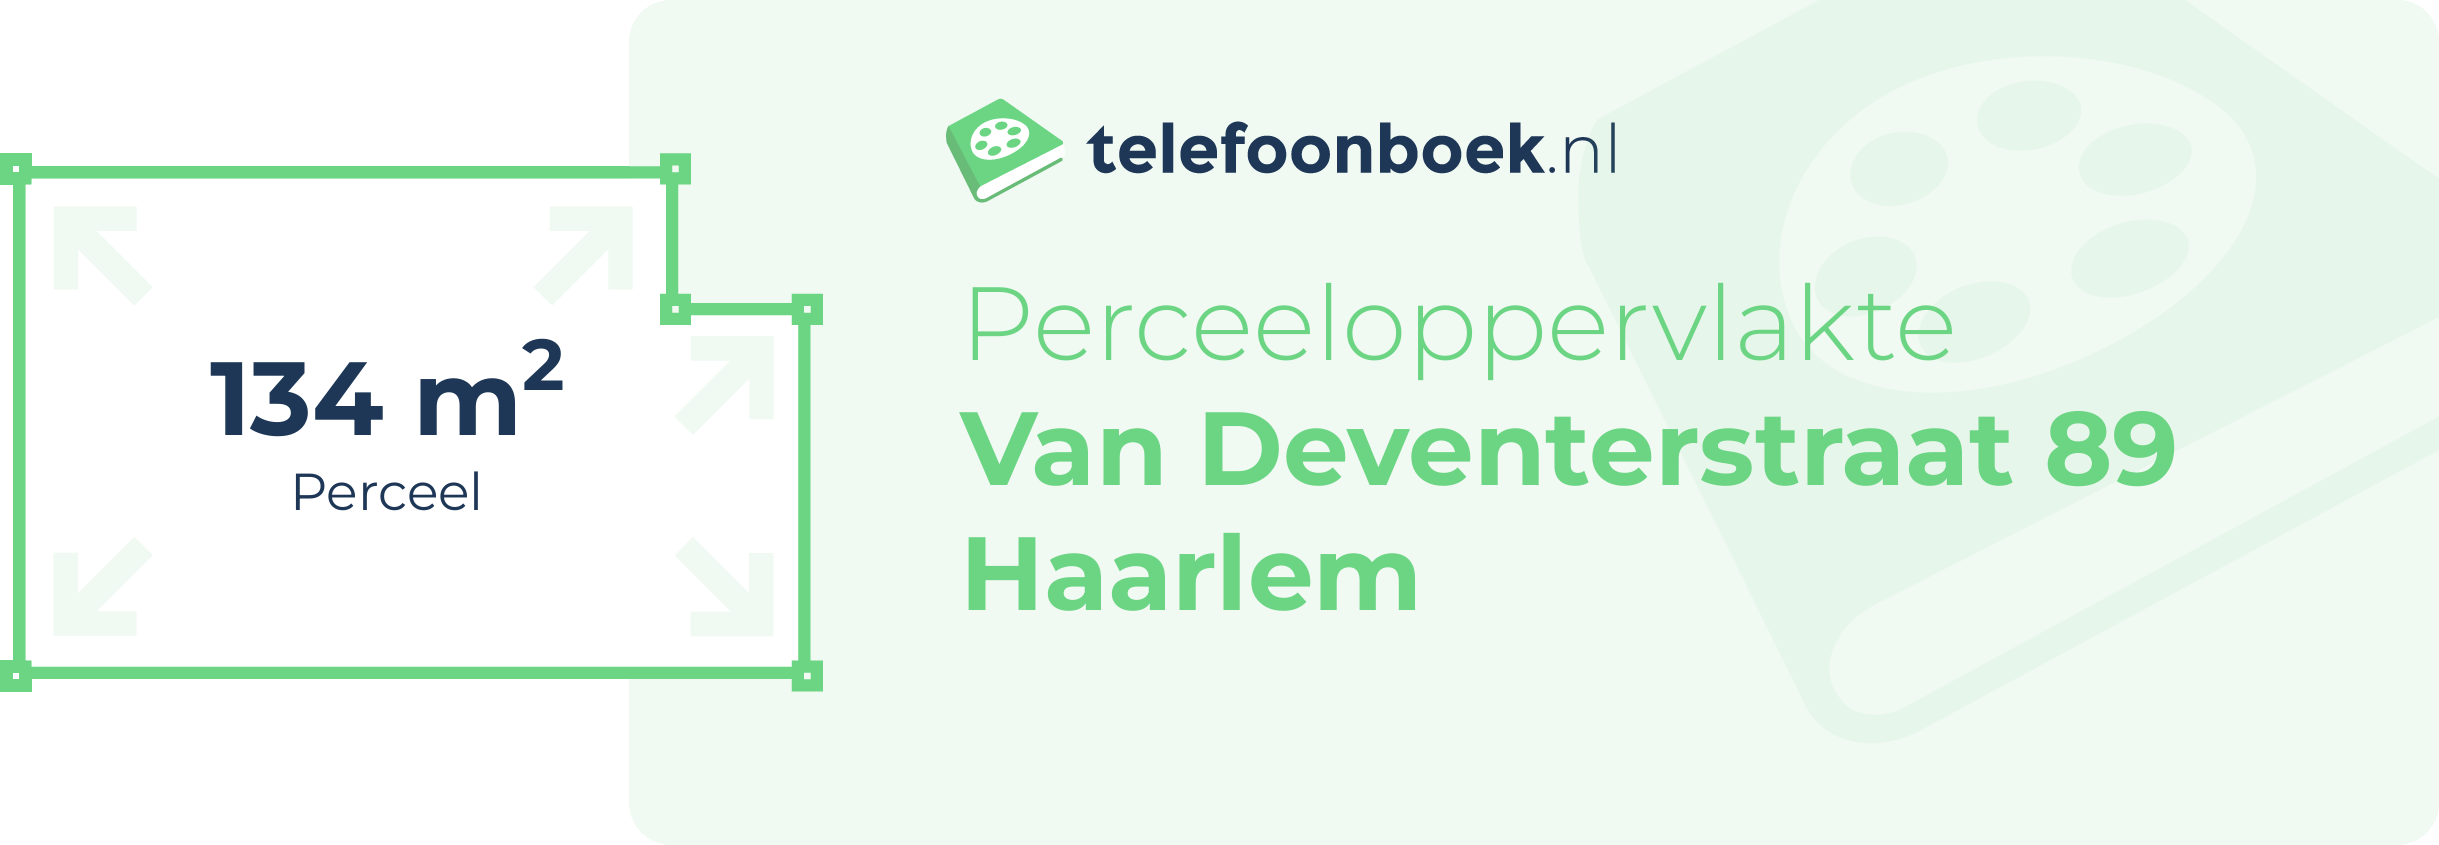 Perceeloppervlakte Van Deventerstraat 89 Haarlem